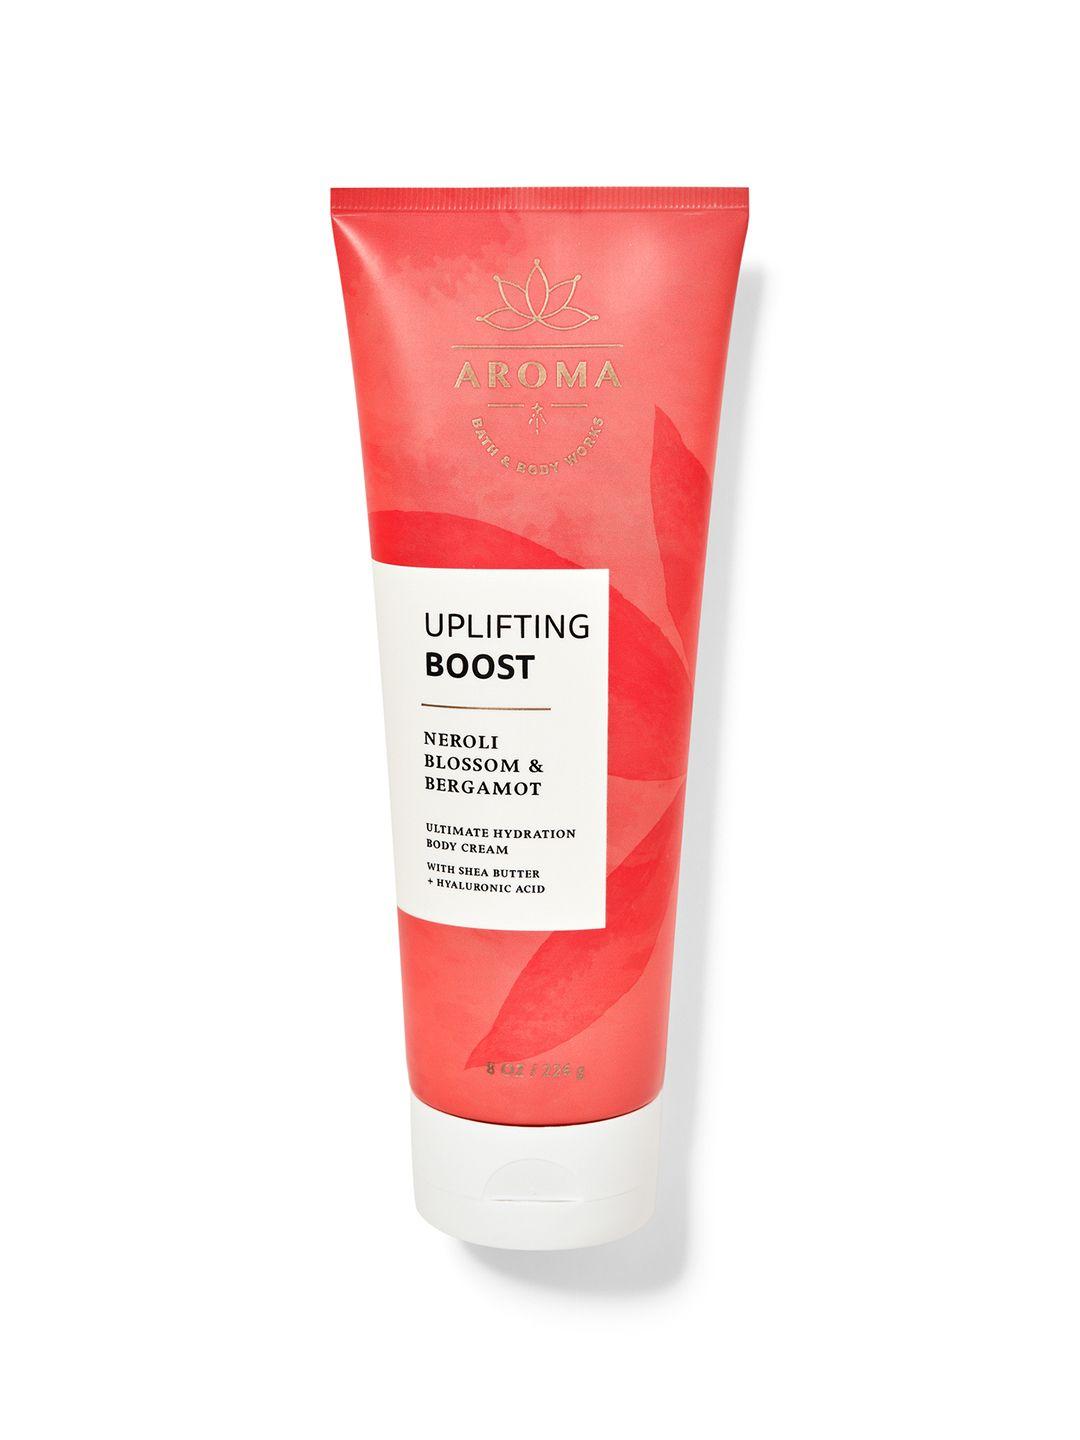 Bath & Body Works Uplifting Boost Neroli Blossom & Bergamot Body Cream - 226g